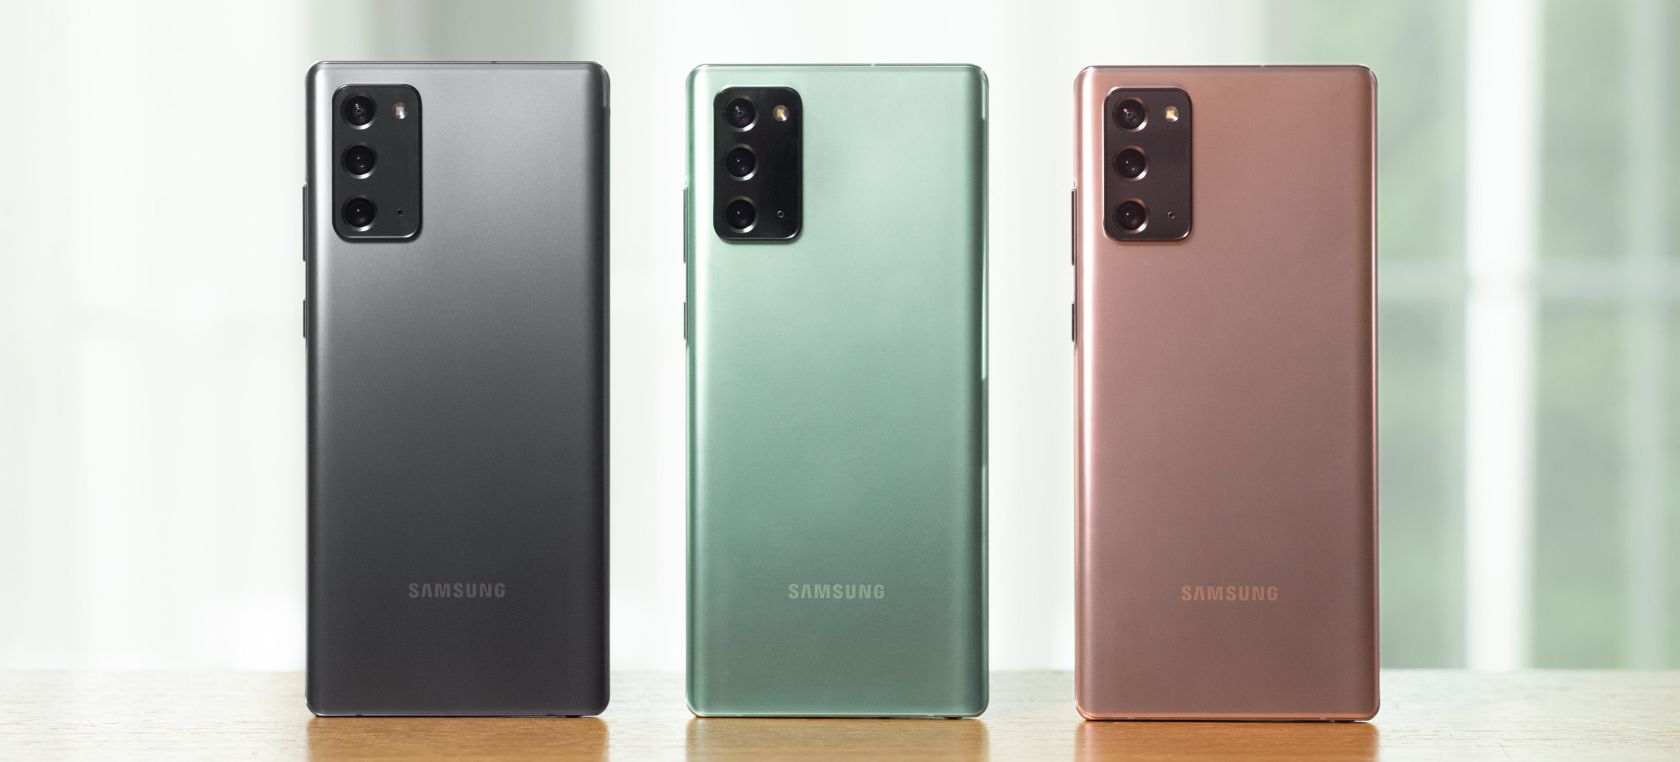 La línea Note de Samsung no volverá